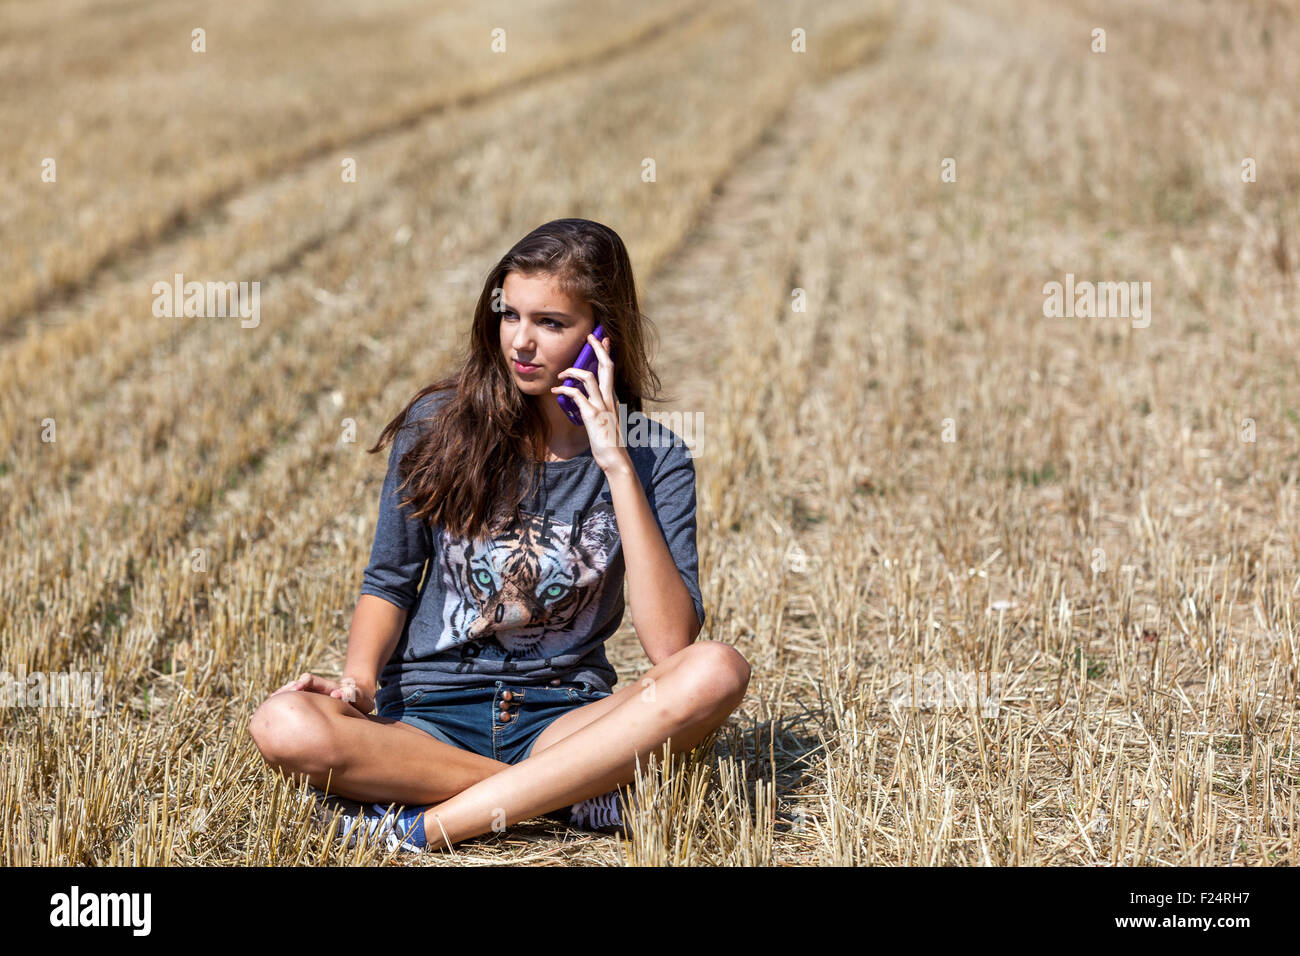 Adolescente appelant on mobile phone Banque D'Images